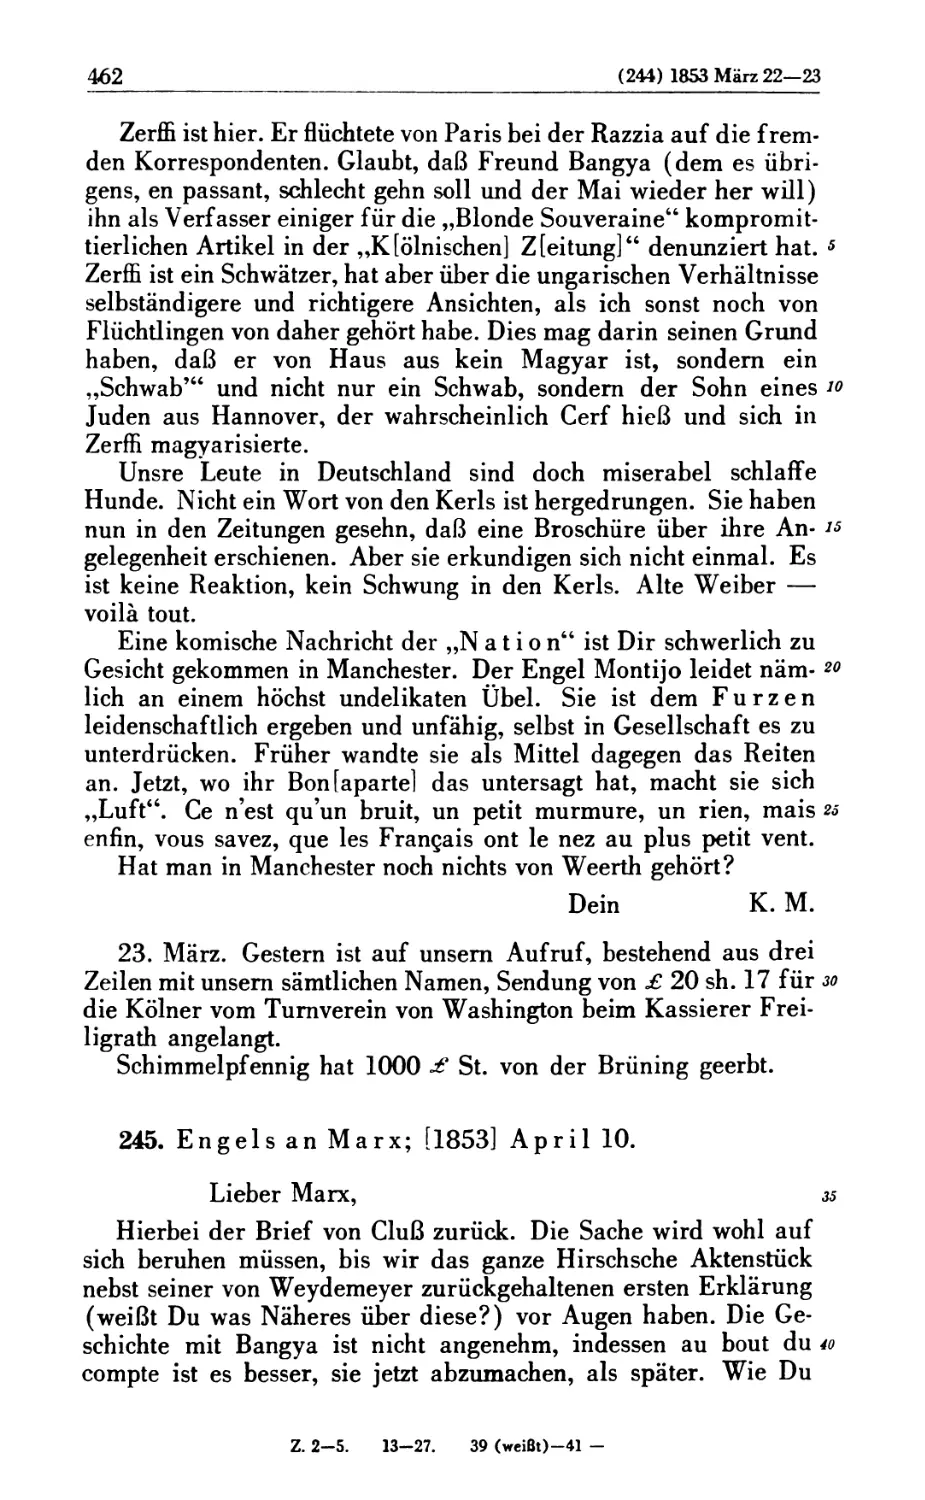 245. Engels an Marx; [1853] April 10